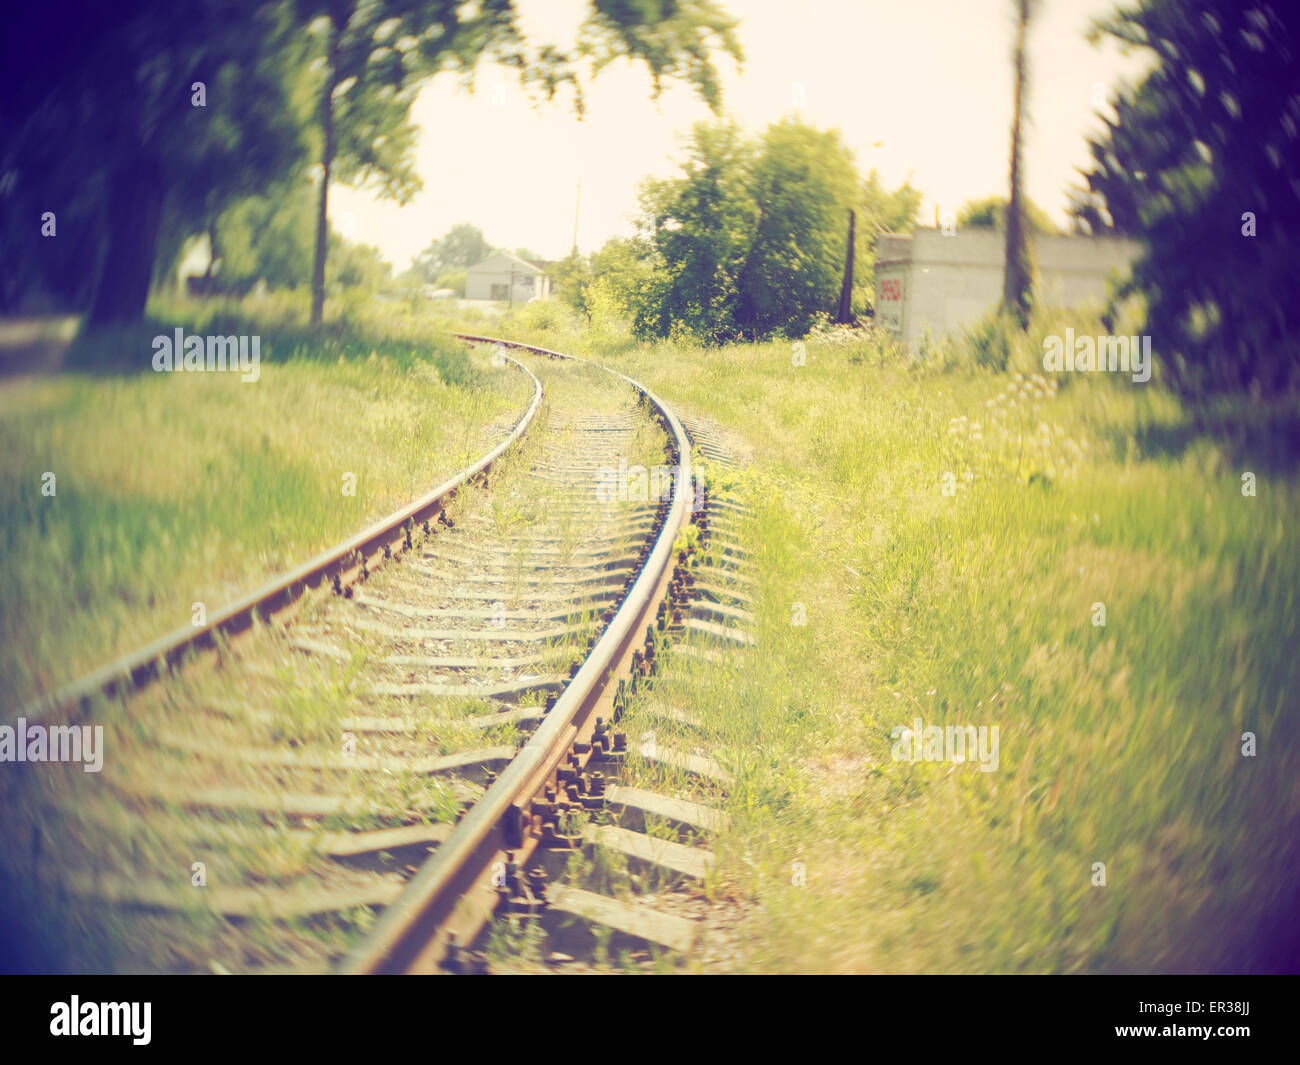 26 mai 2015 - chemin de fer de train de disparaître au loin. Soft focus. Retro style photo. (Crédit Image : © Igor Golovniov/ZUMA/ZUMAPRESS.com) fil Banque D'Images